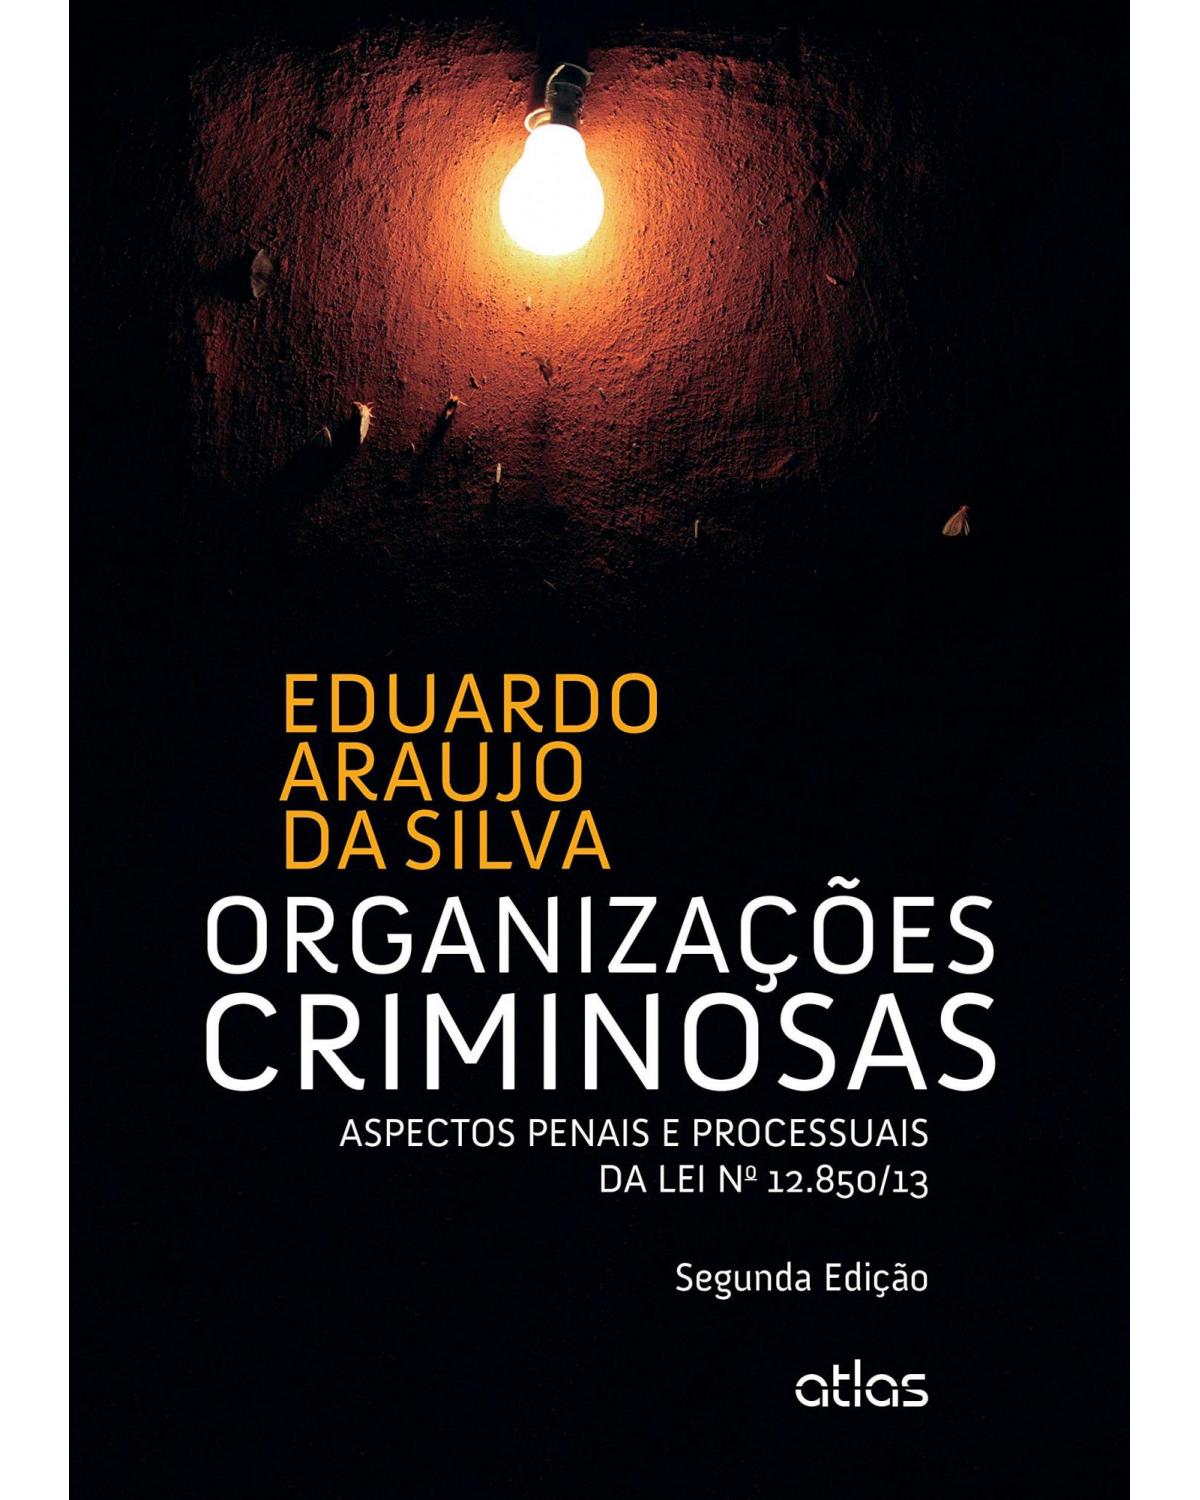 Organizações criminosas - Aspectos penais e processuais da lei nº 12.850/13 - 2ª Edição | 2015